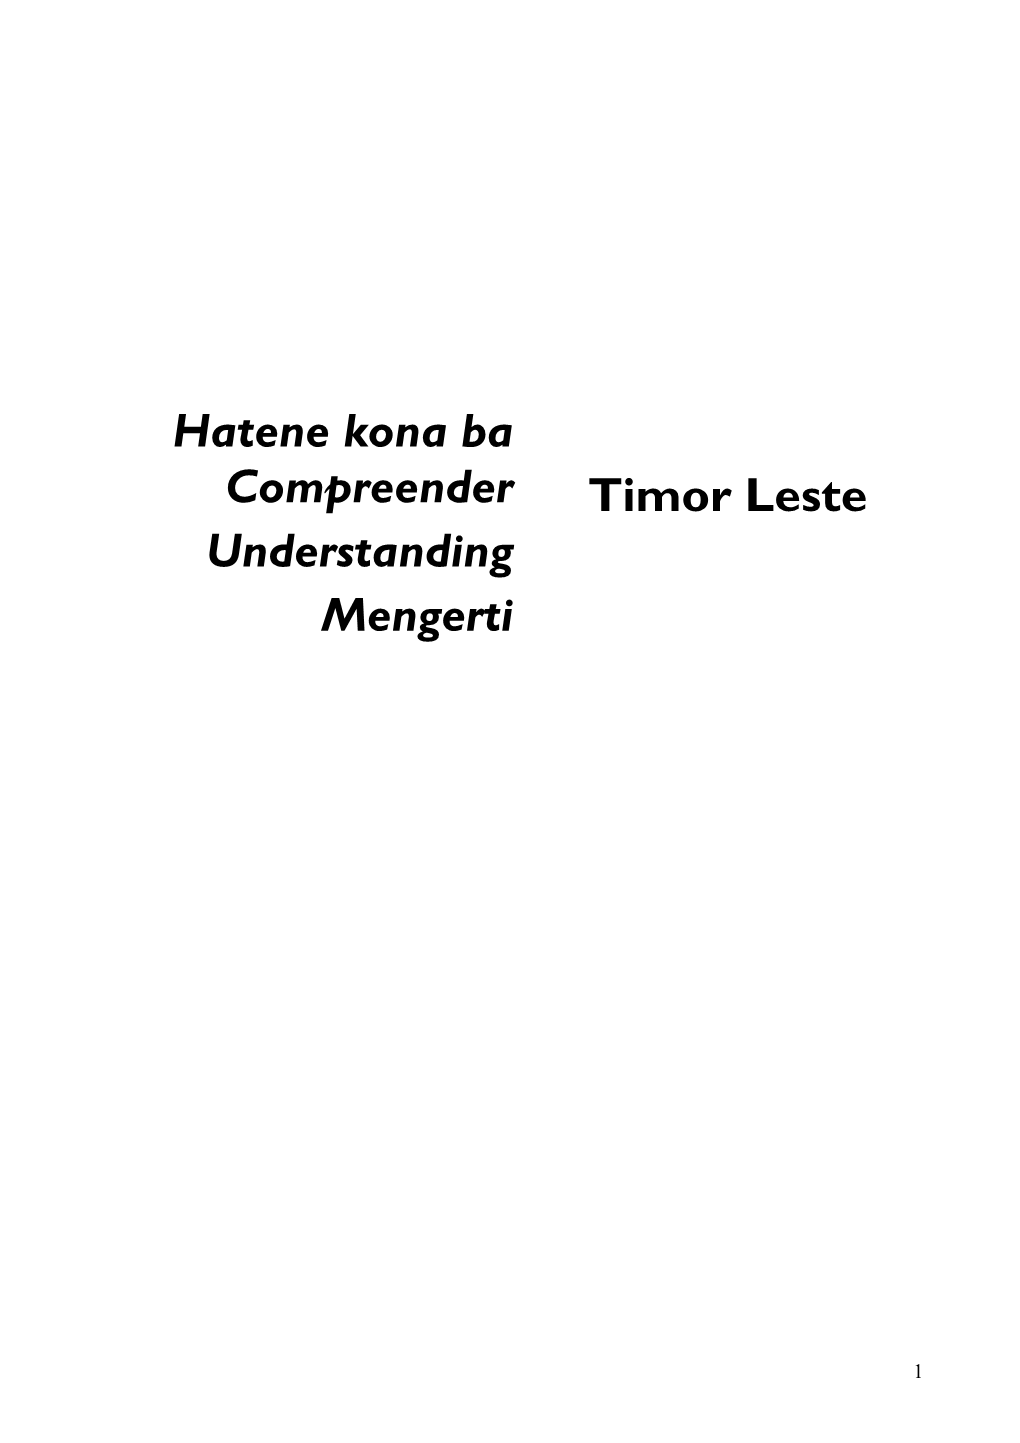 Hatene Kona Ba Compreender Understanding Mengerti Timor Leste